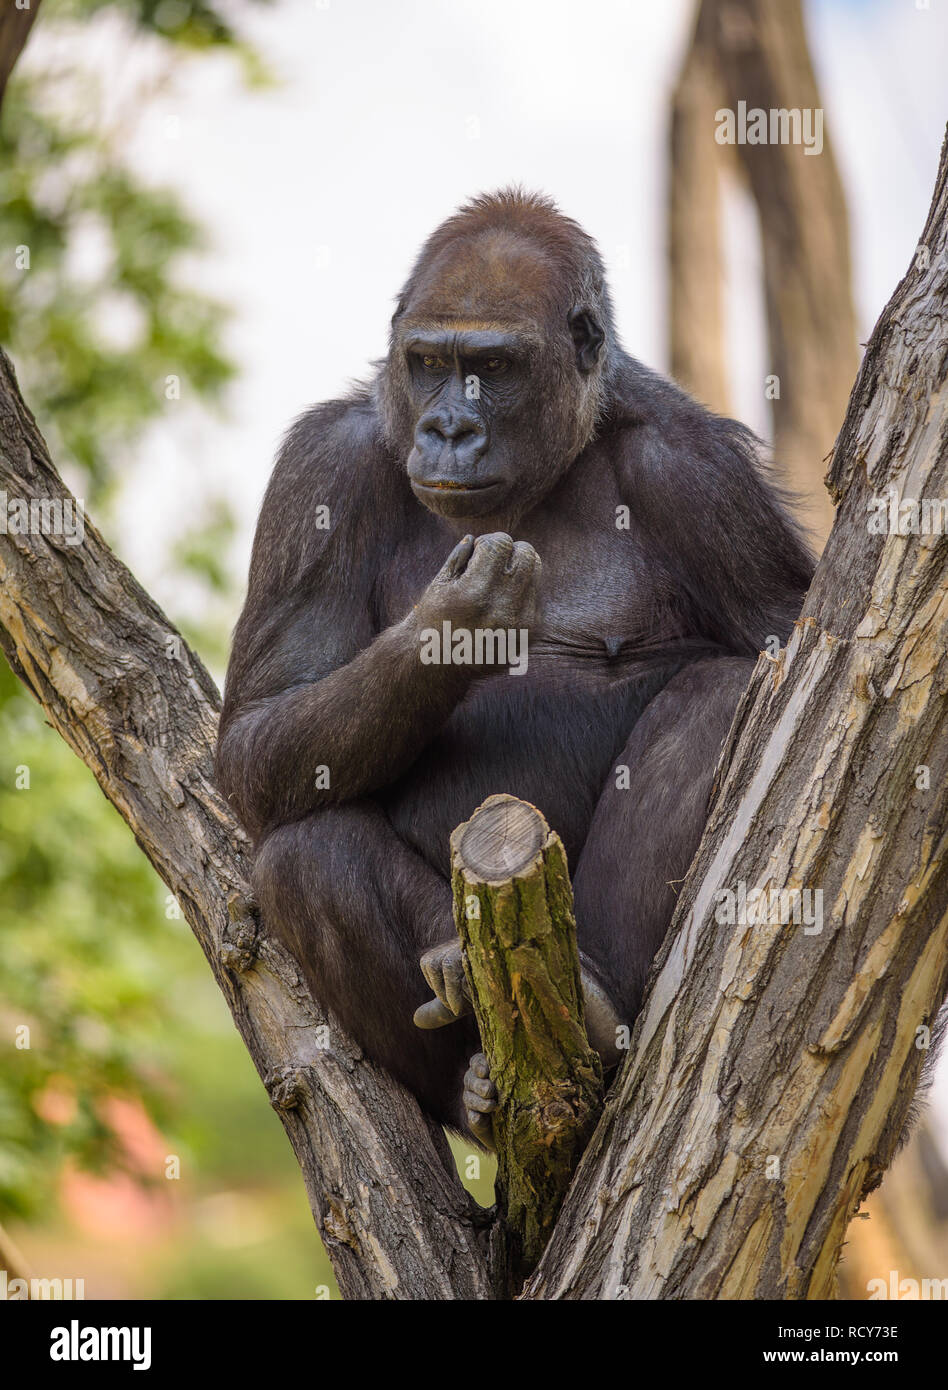 Retrato de un gran gorila de las tierras bajas occidentales Foto de stock